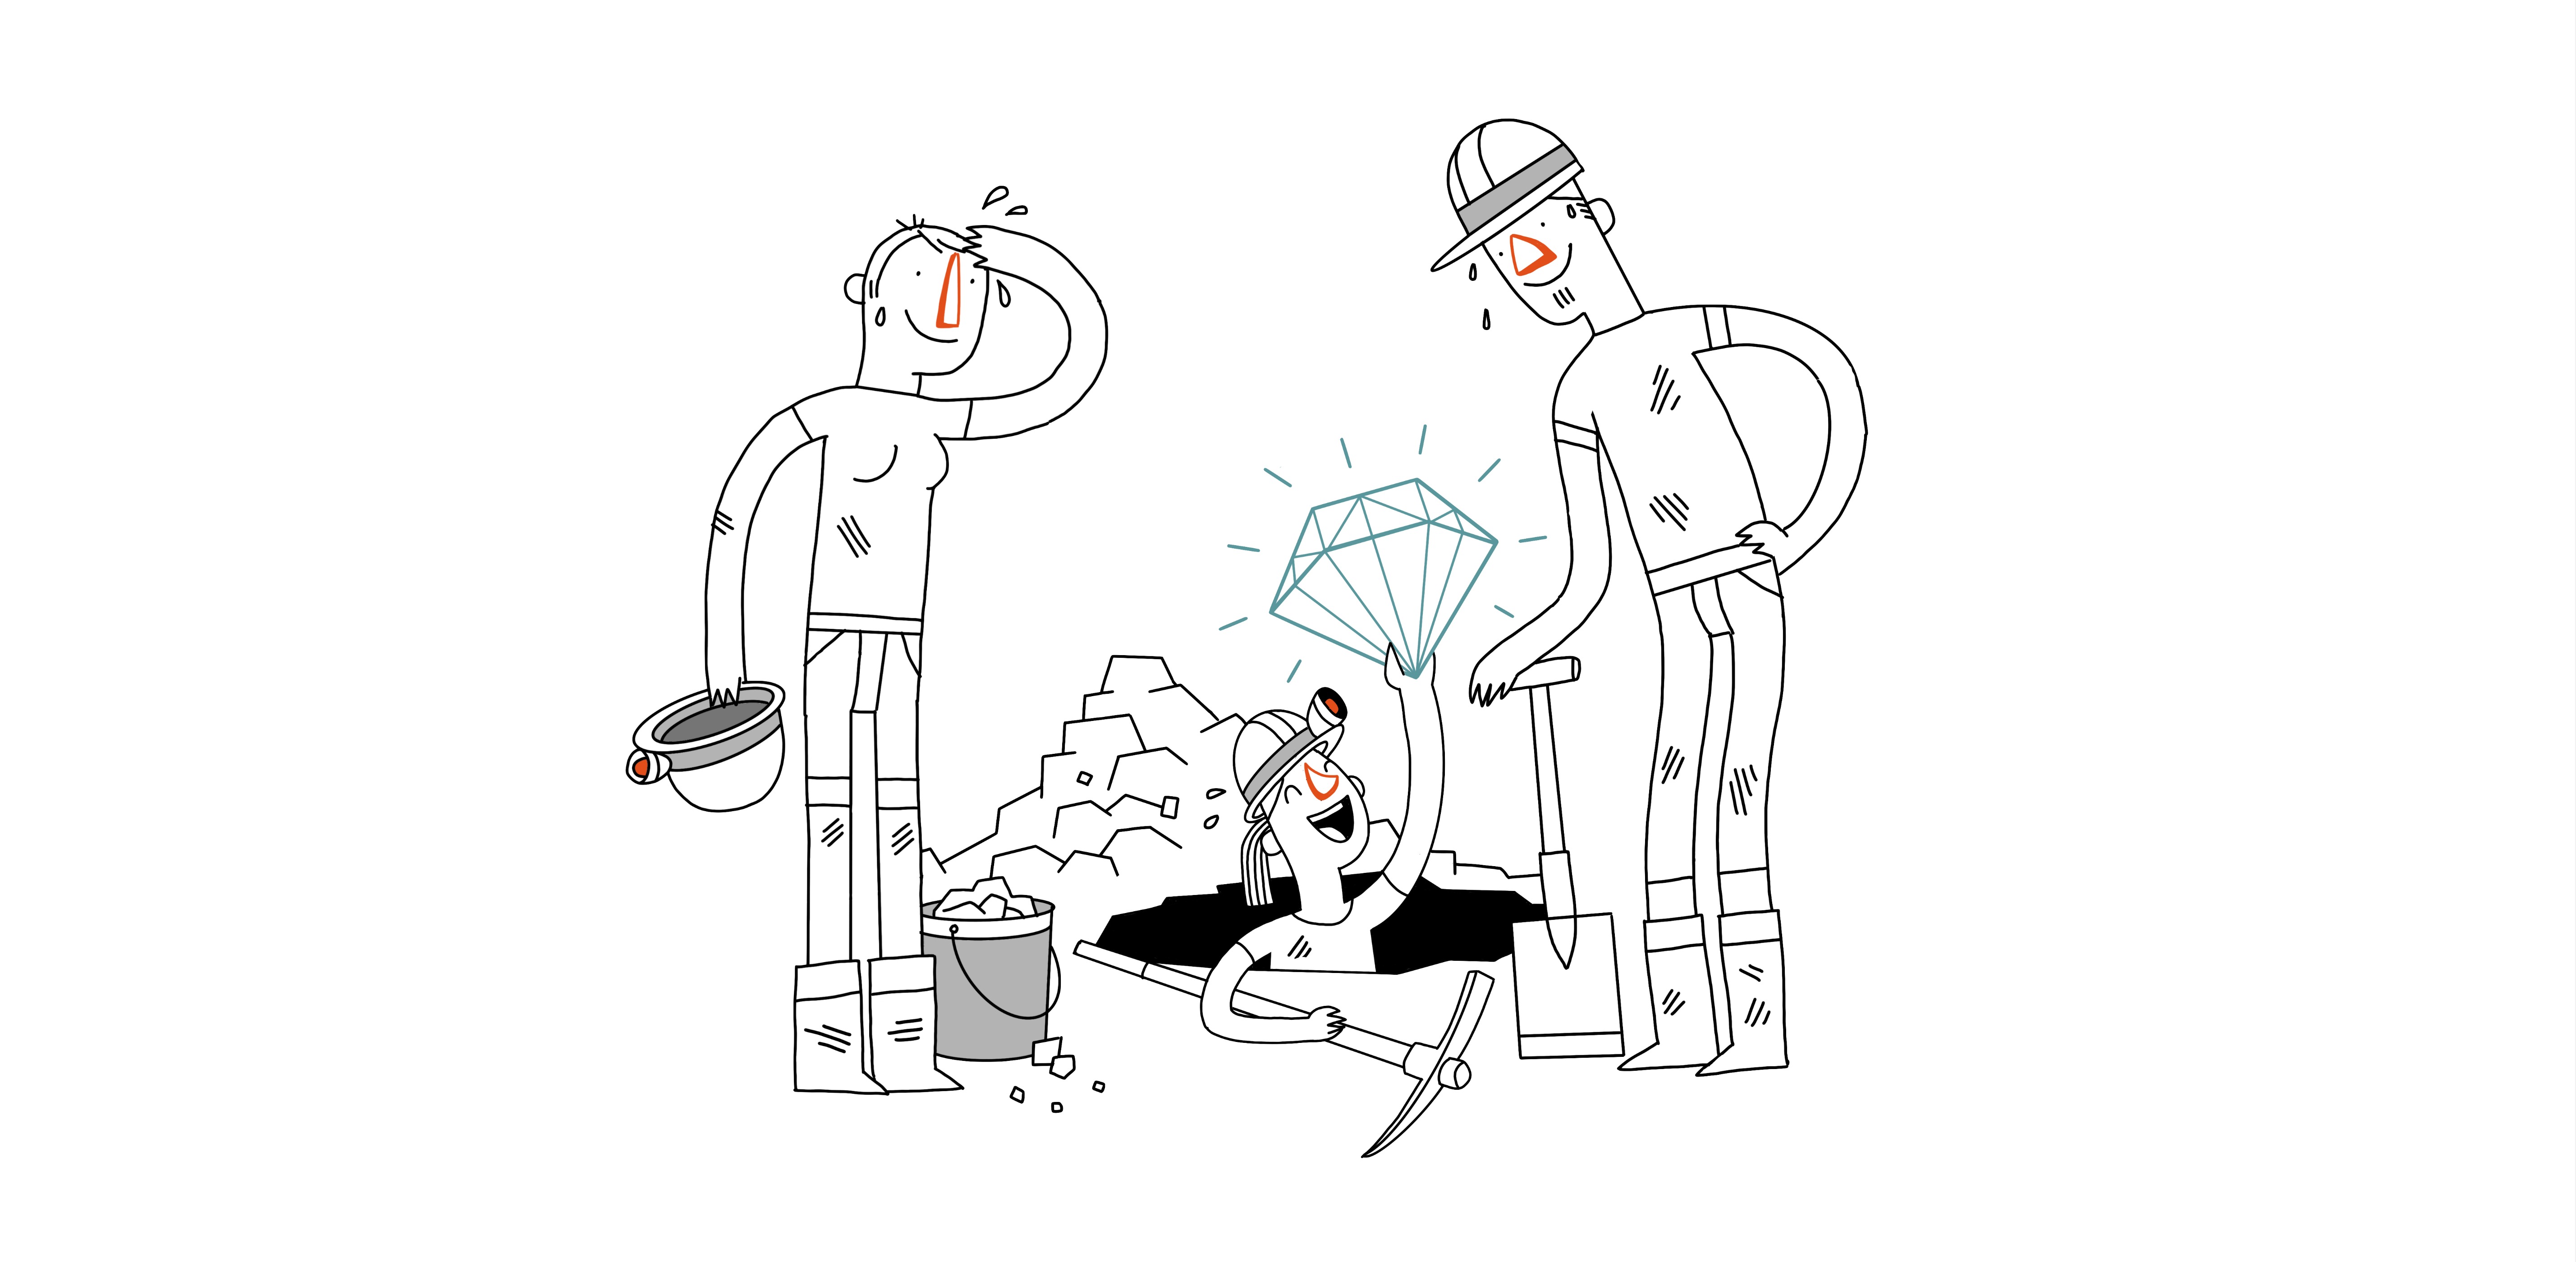 Illustration mit 3 Menschen mit Bauarbeiterhelmen die ein Loch graben, eine hält einen Diamanten hoch.